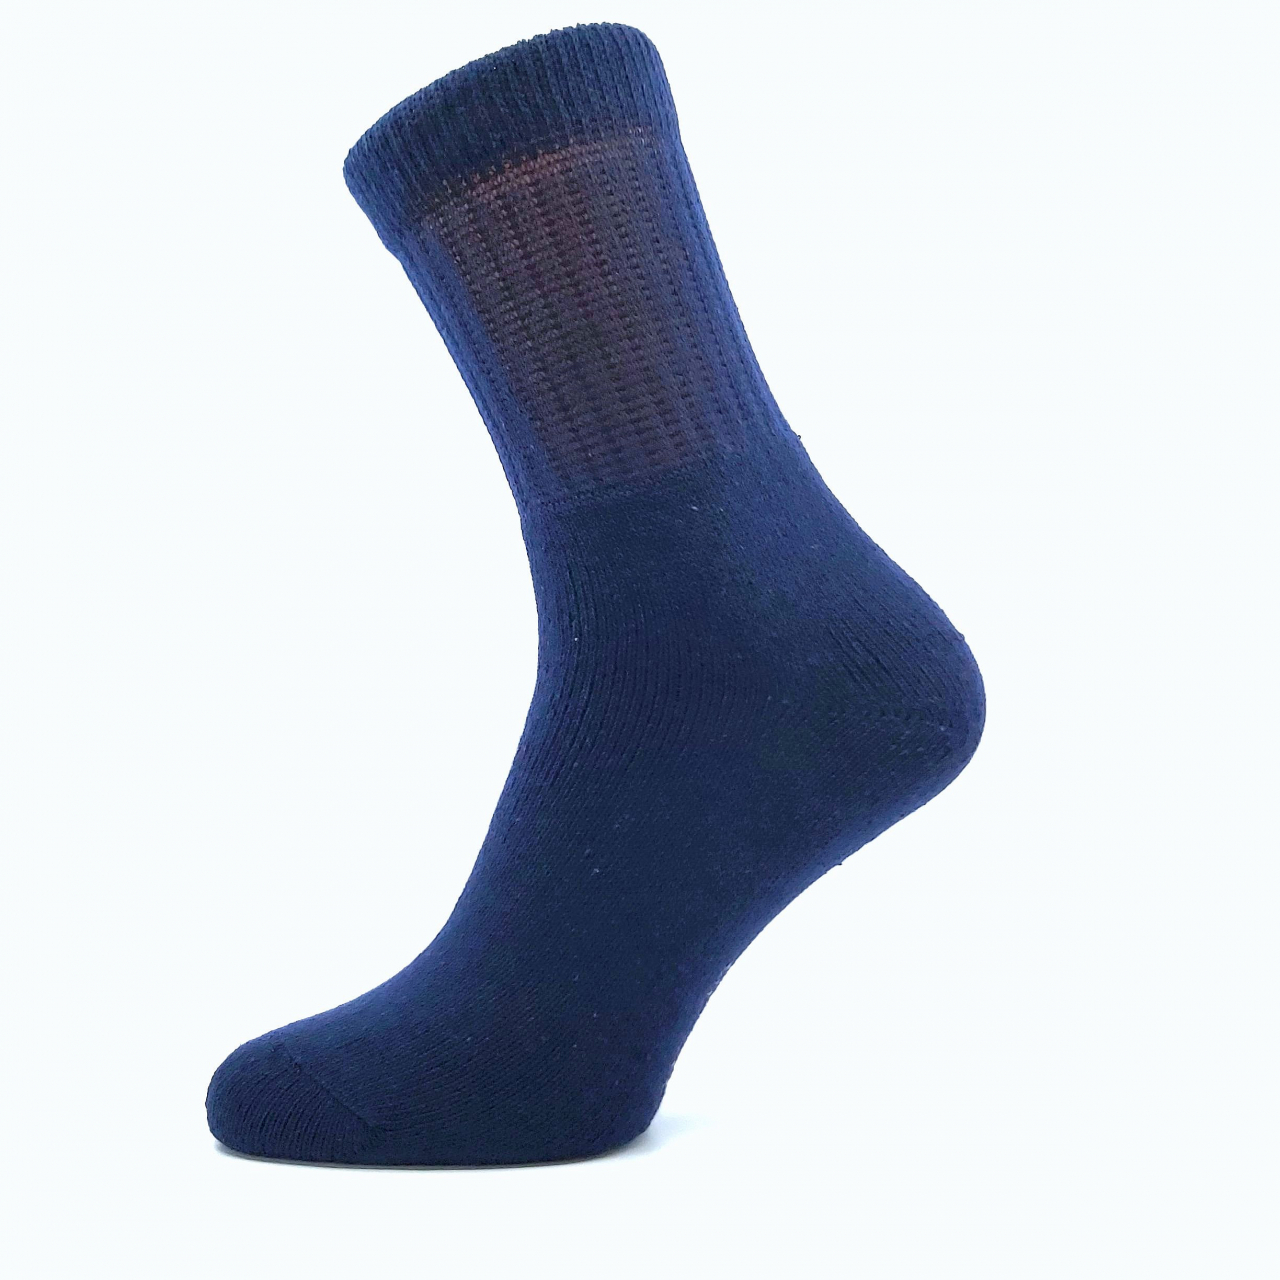 Ponožky trekingové unisex Boma 012-41-39 I - tmavě modré, 43-46